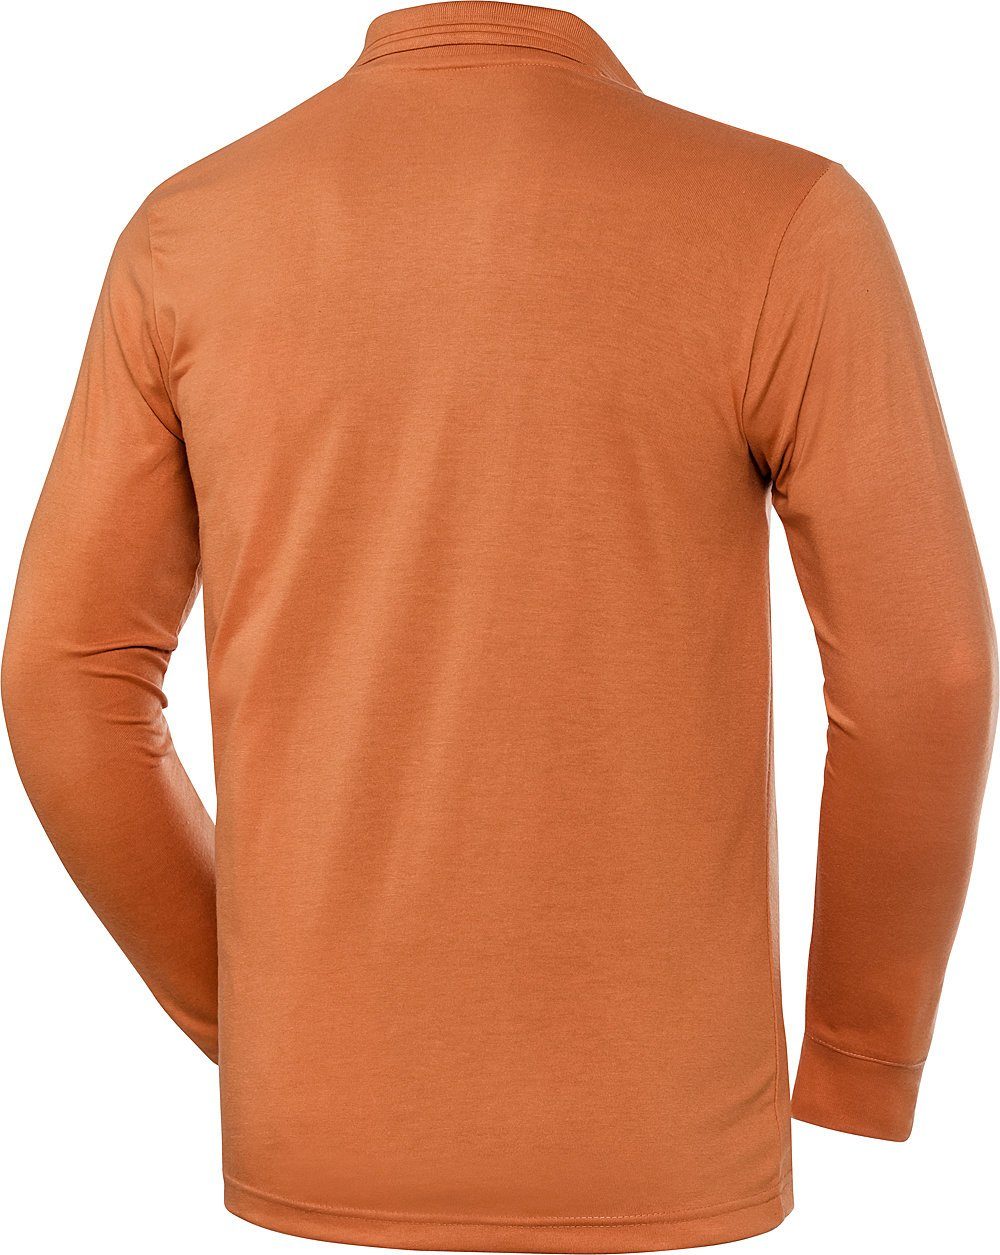 orange Langarm-Poloshirt HENSON&HENSON superweiches Jersey-Gewebe